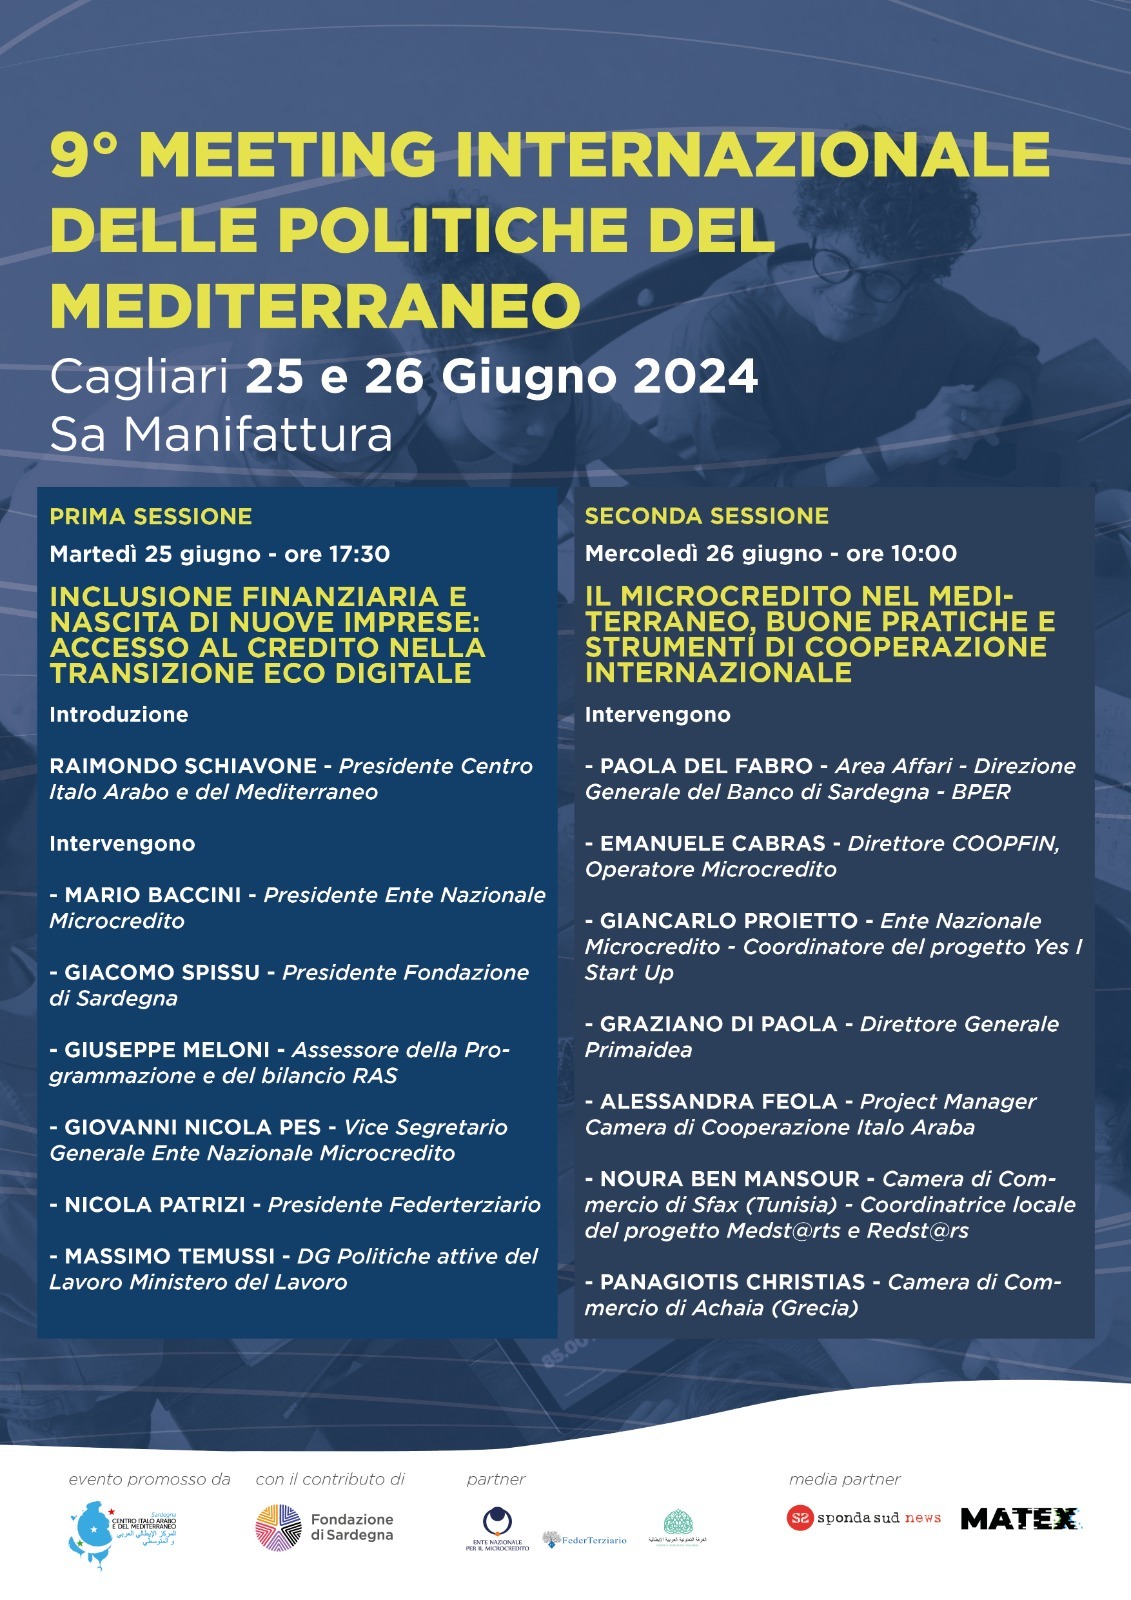 9° Meeting Internazionale delle Politiche del Mediterraneo 